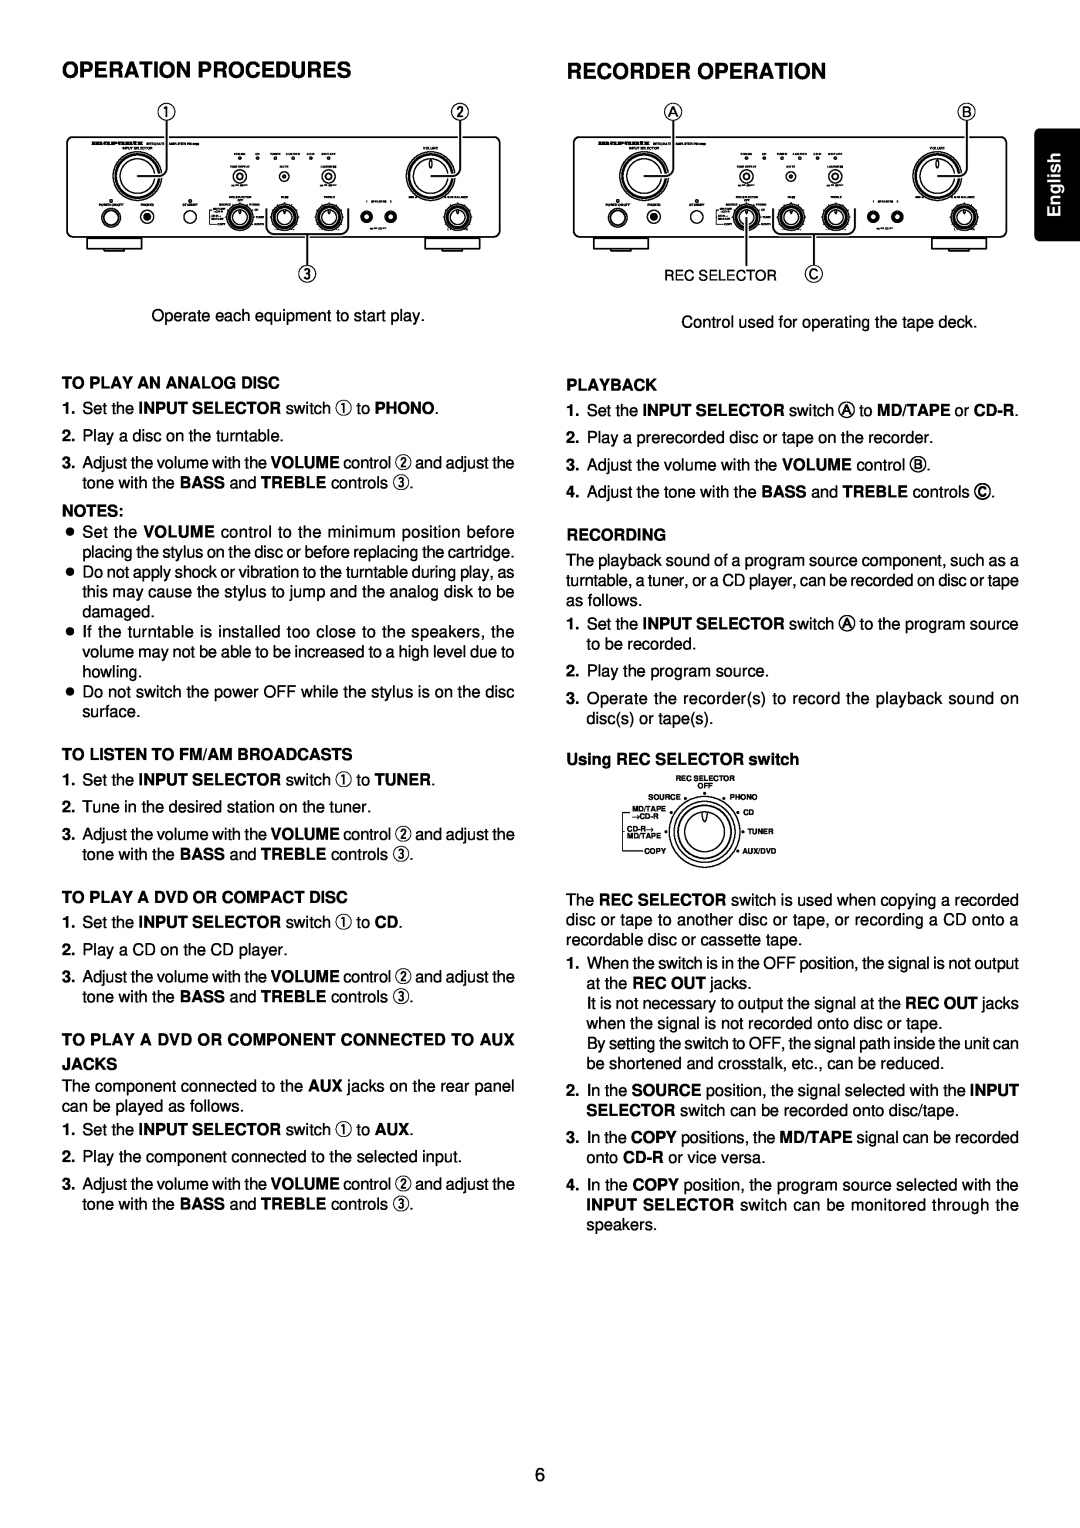 Marantz PM4200 manual Procedures, Recorder Operation 